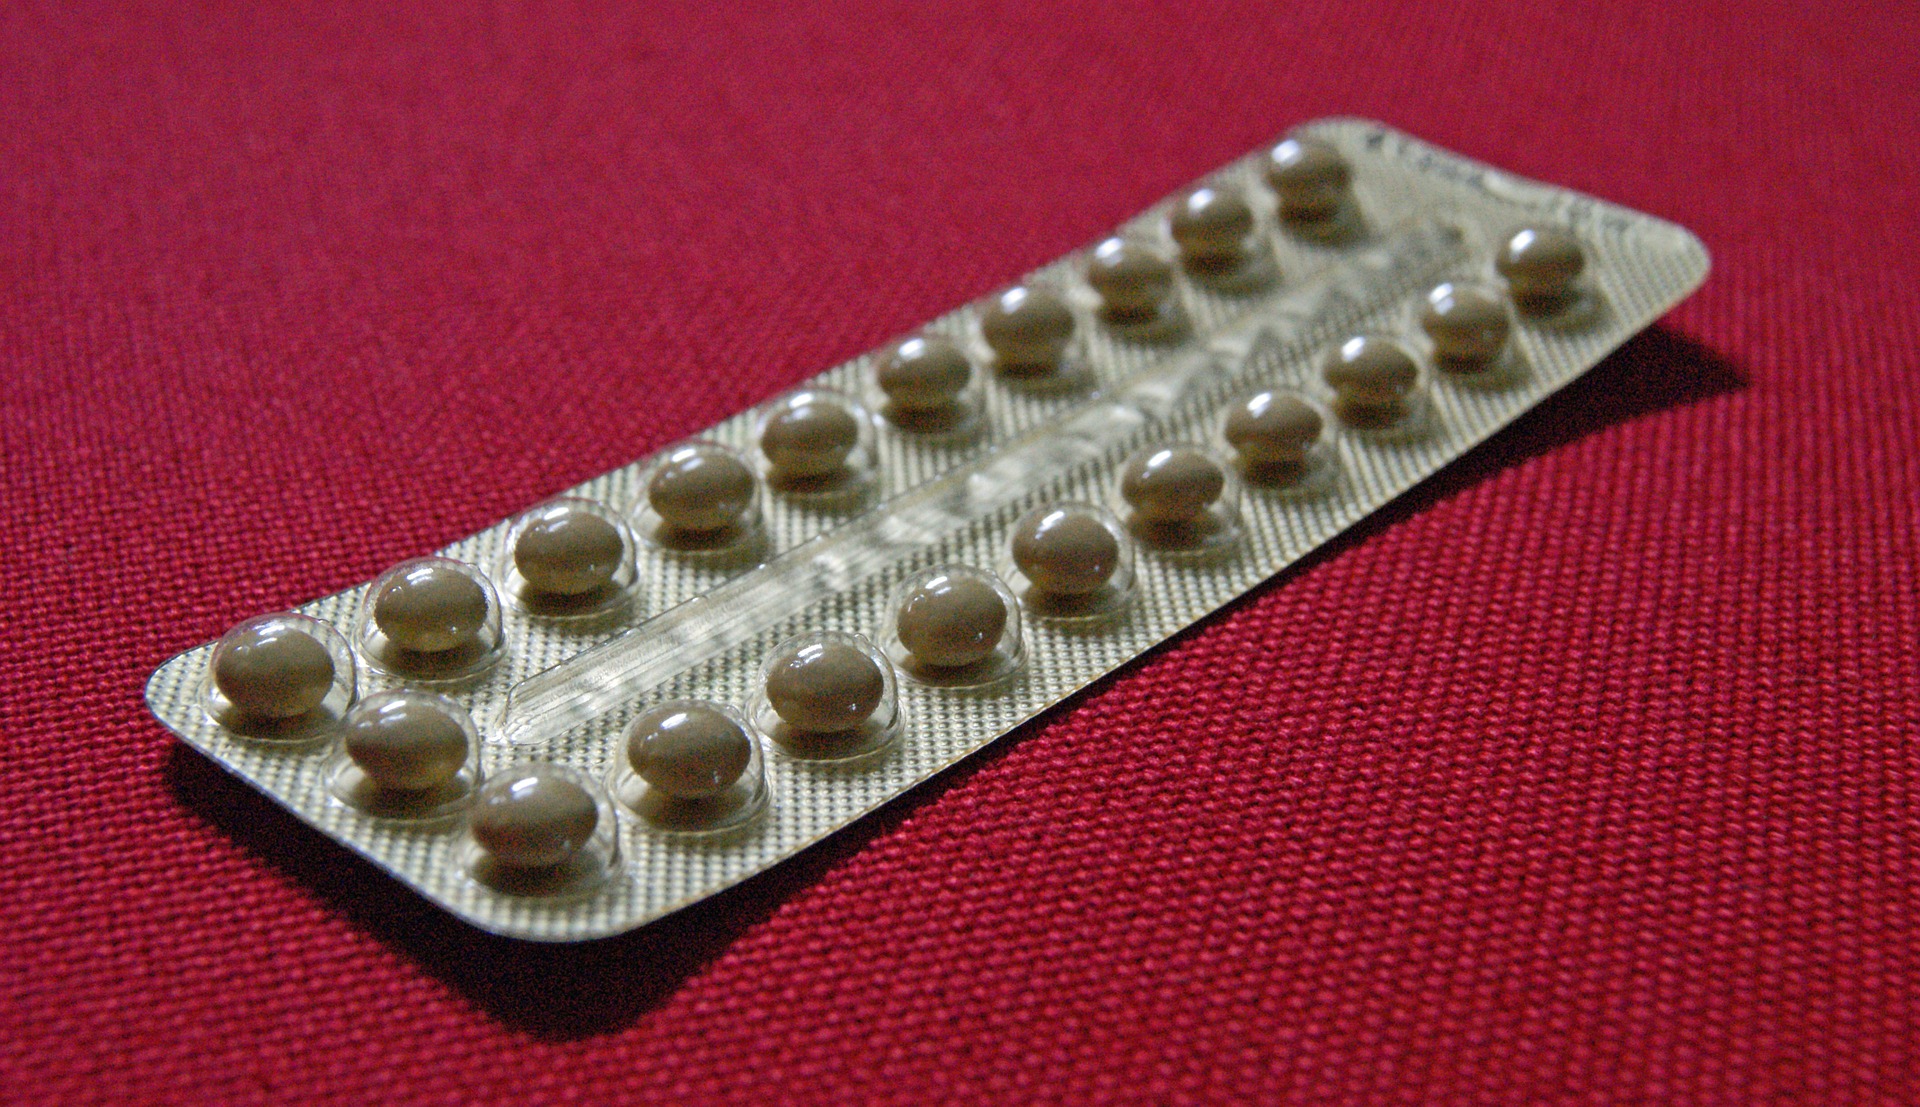 Жените които избират противозачатъчните хапчета като контрацепция често се интересуват